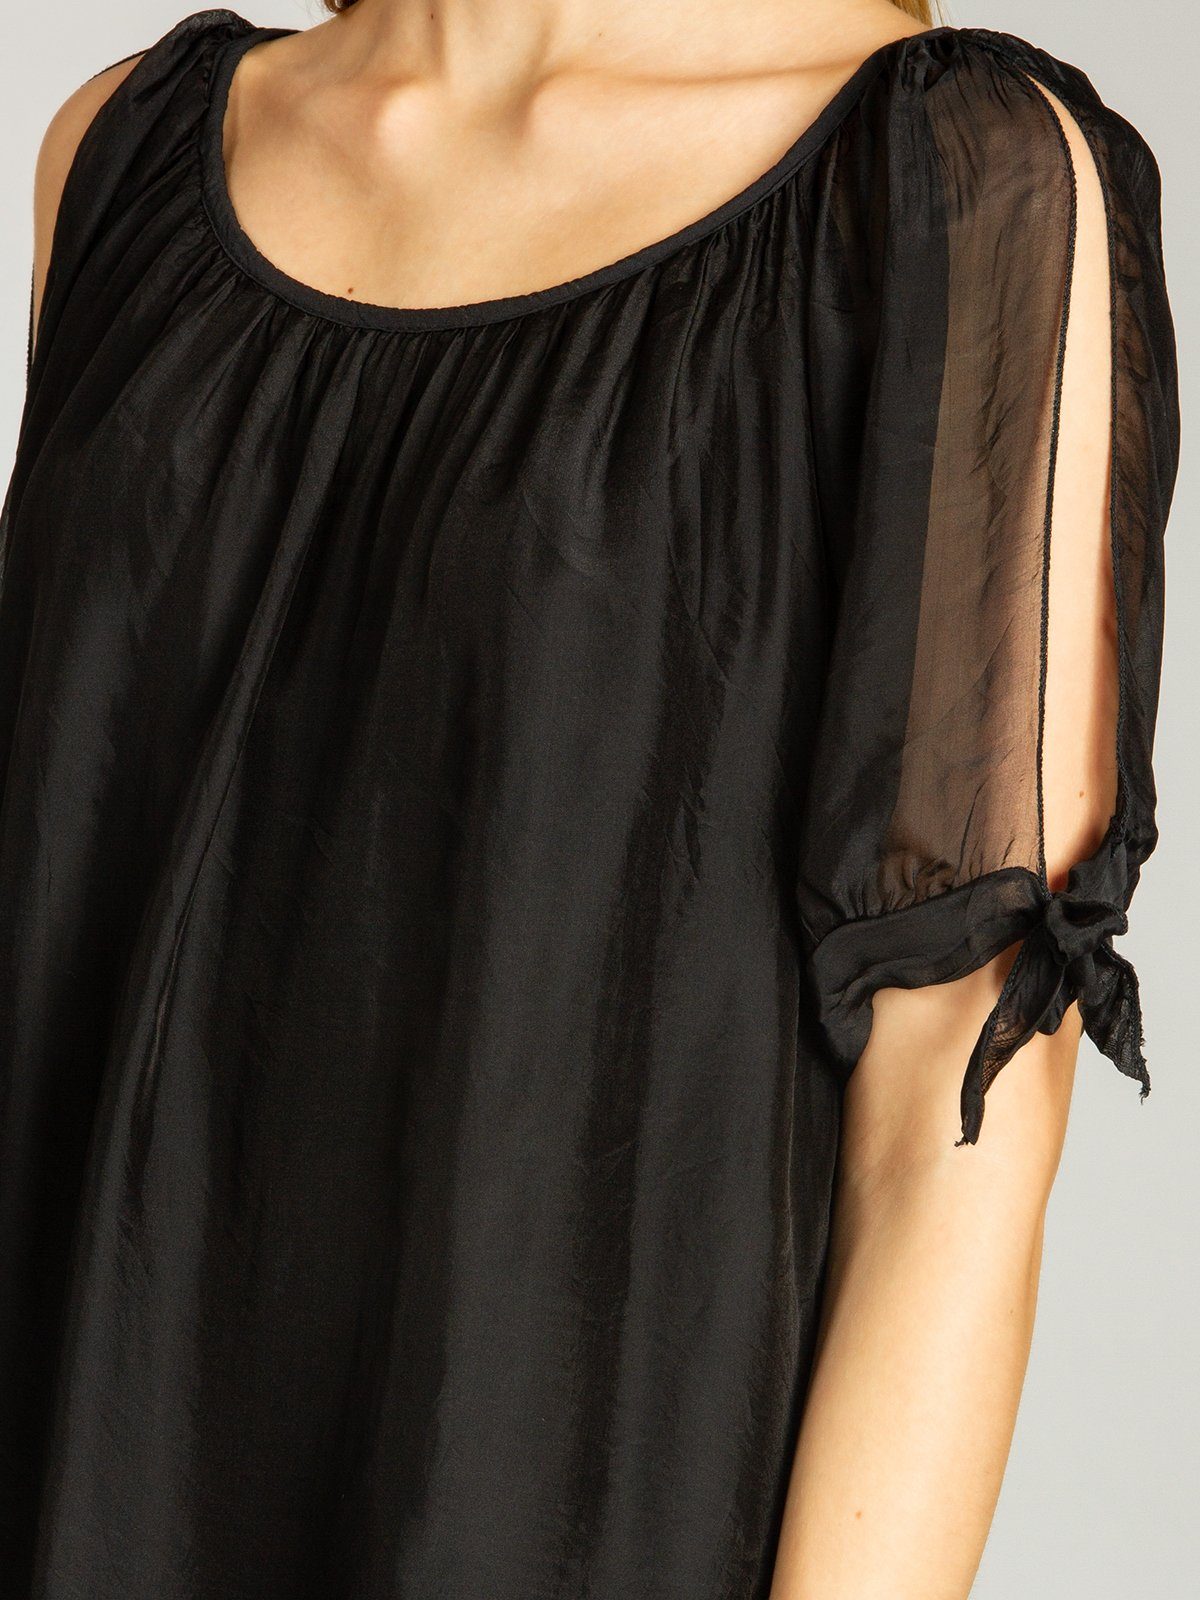 Caspar Shirtbluse BLU020 Damen elegante Seidenanteil Bluse leichte Sommer lange schwarz mit